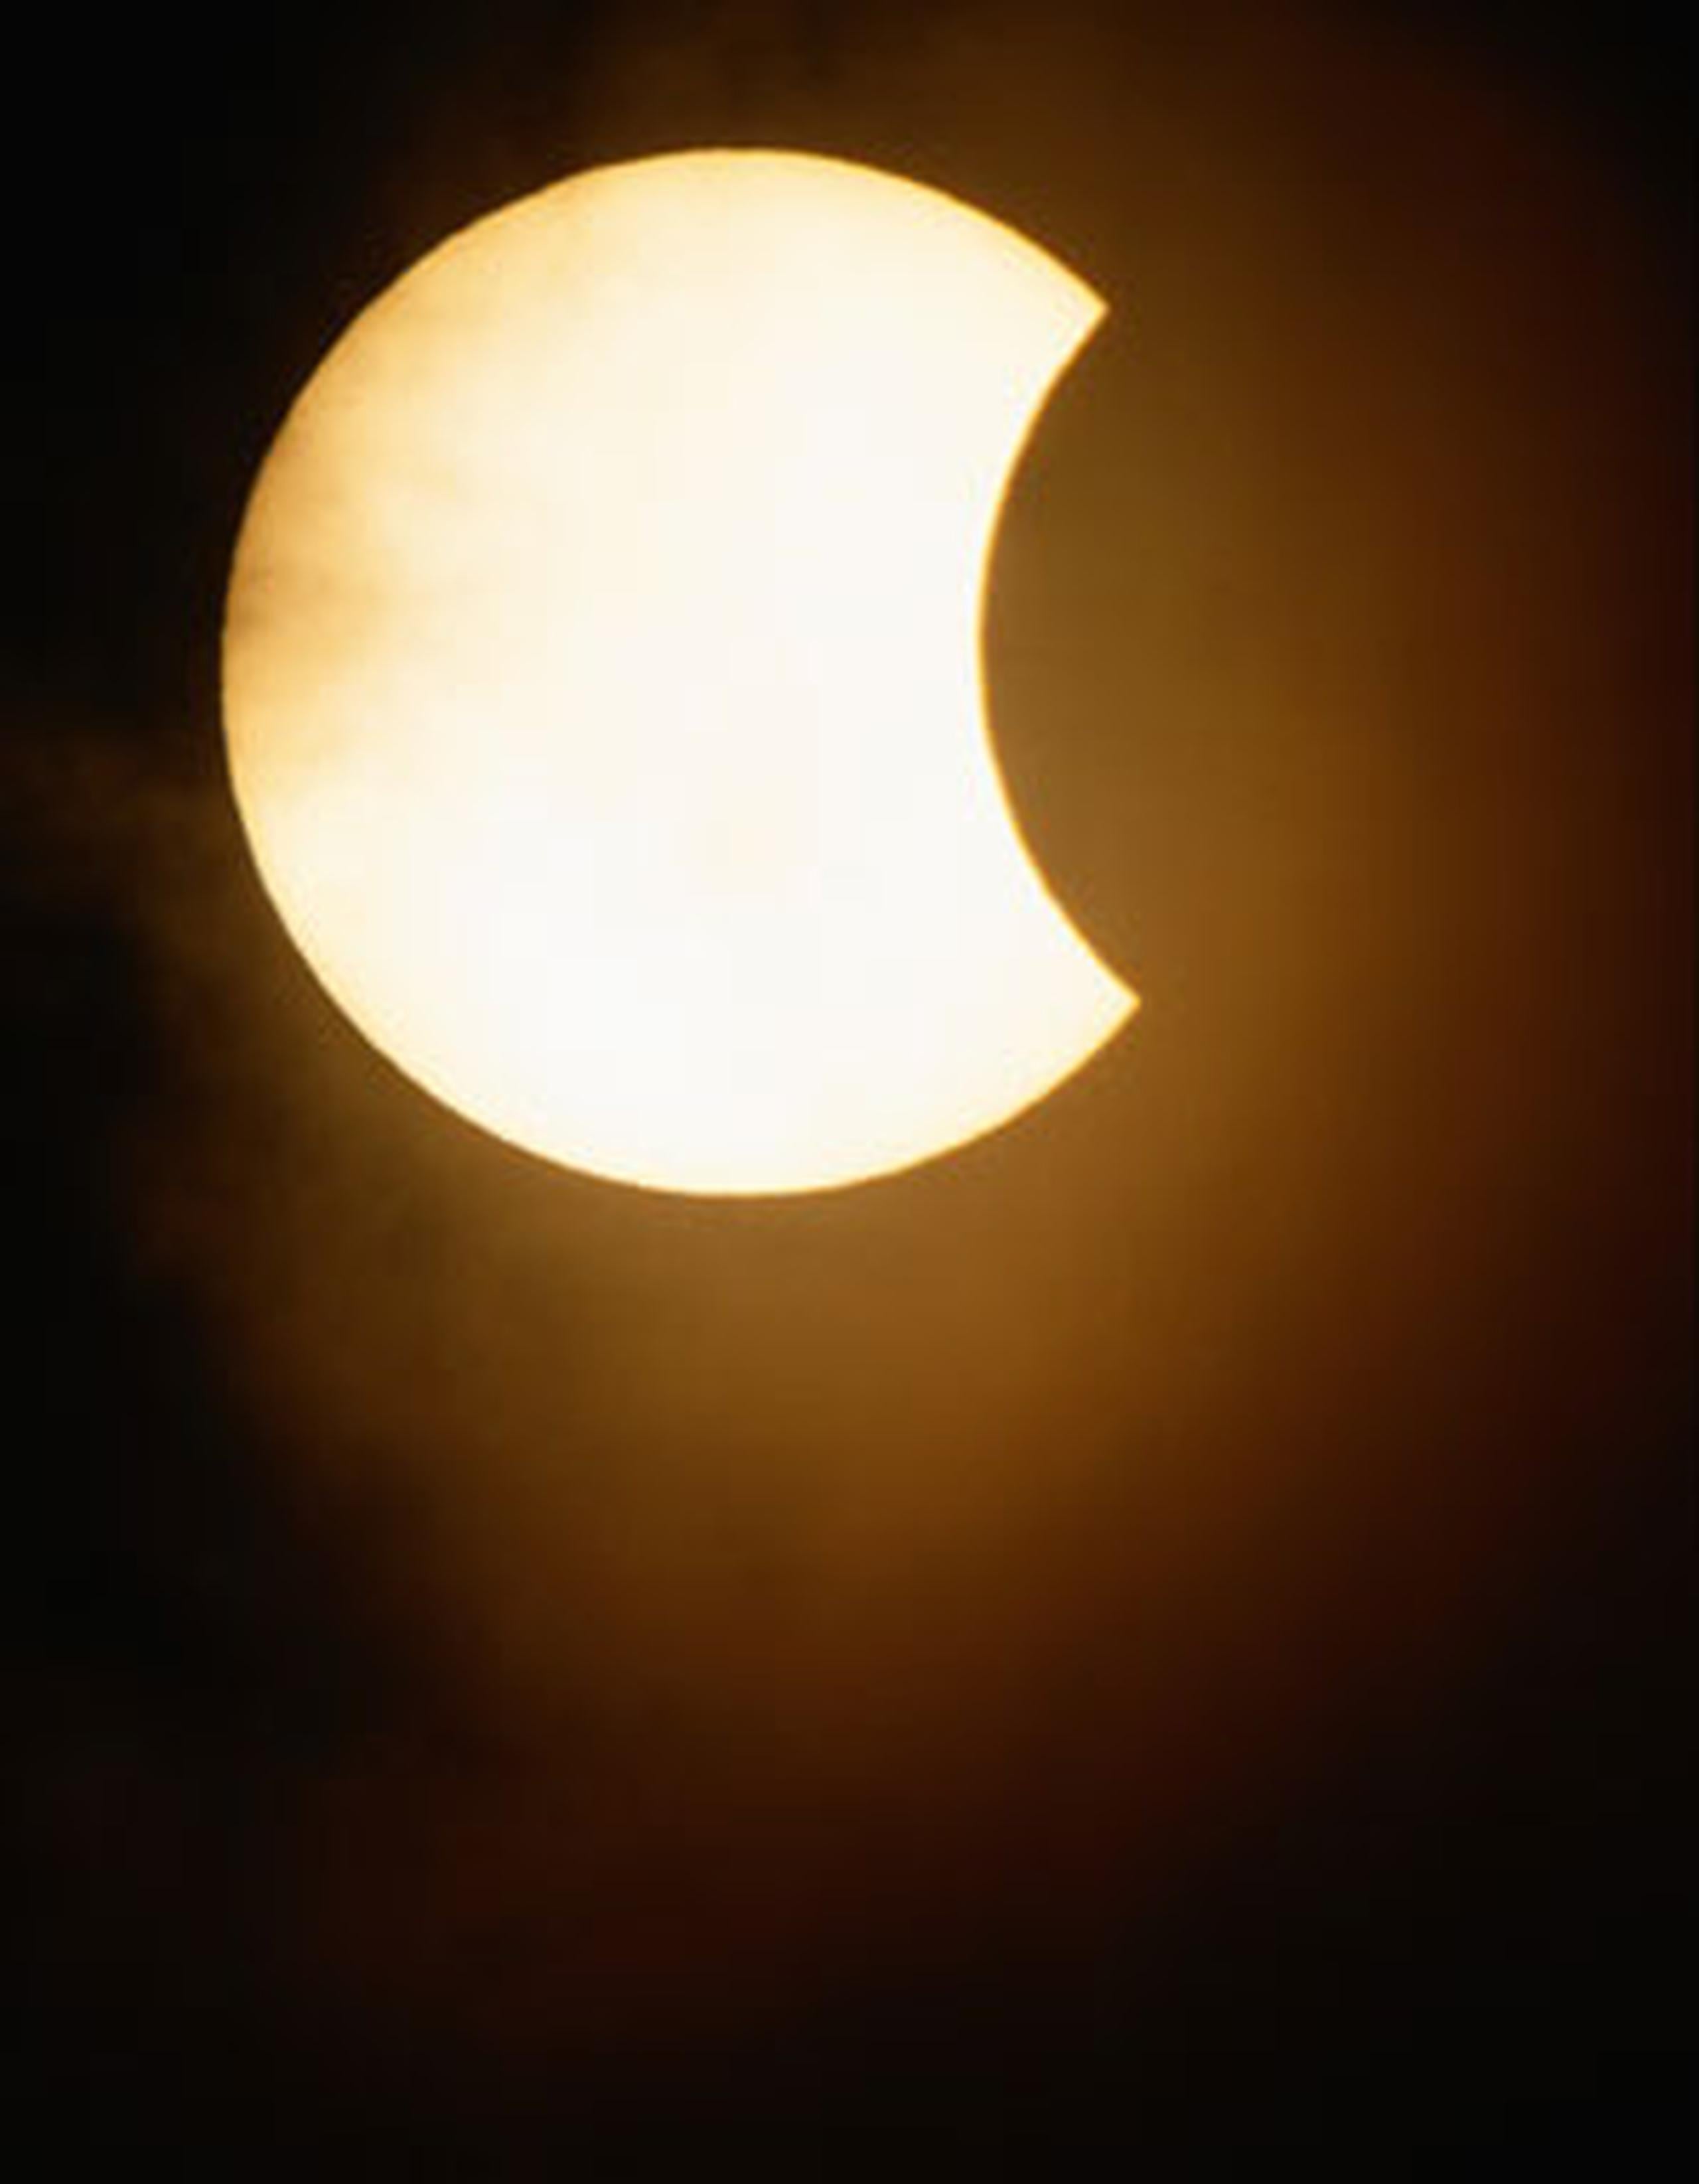 El próximo eclipse total de la Luna ocurrirá el 15 de Abril del 2014, indicó la SAC. (Archivo)
